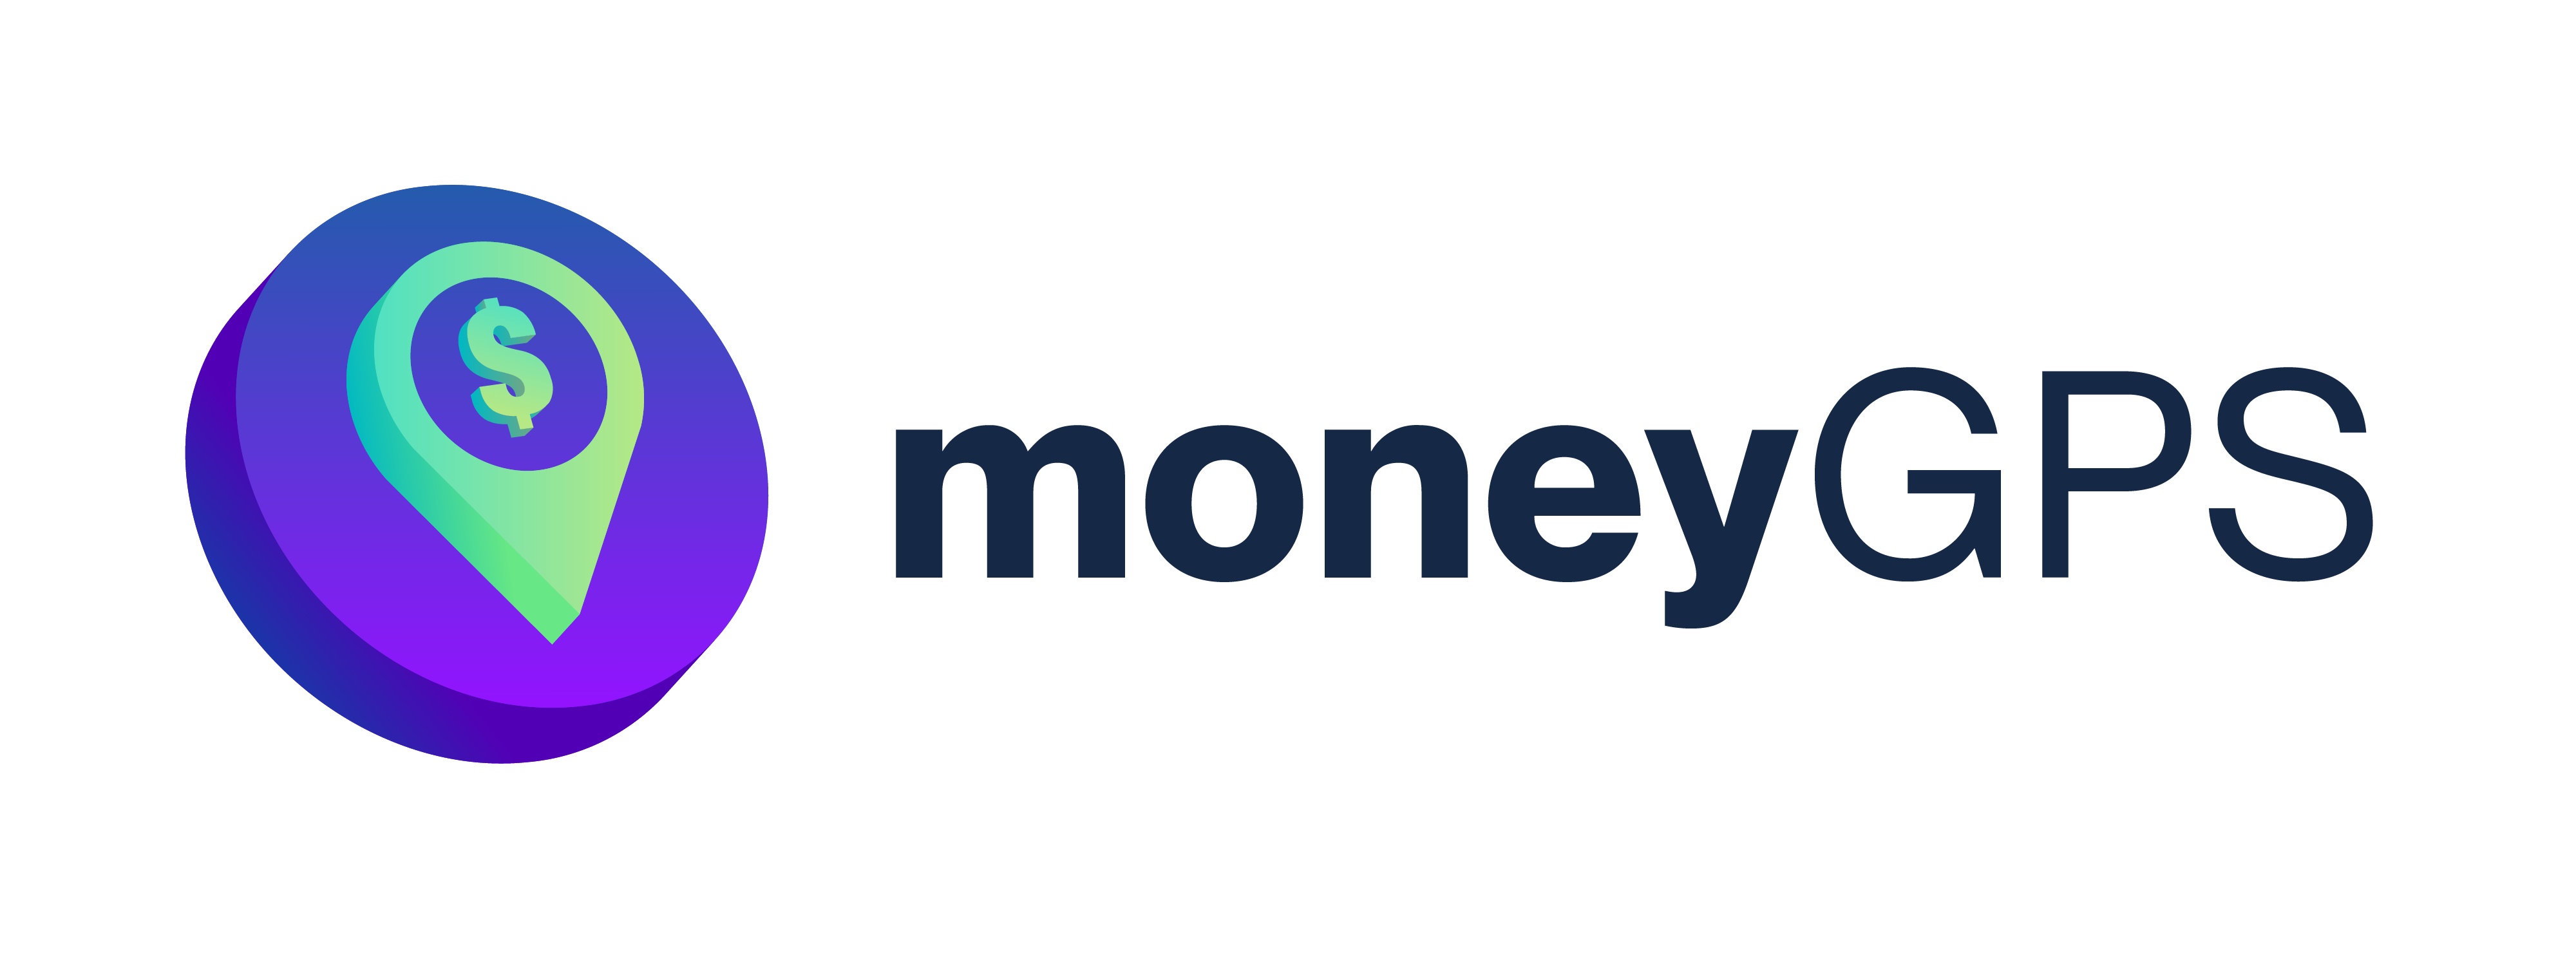 moneyGPS-horizontal-navy-text